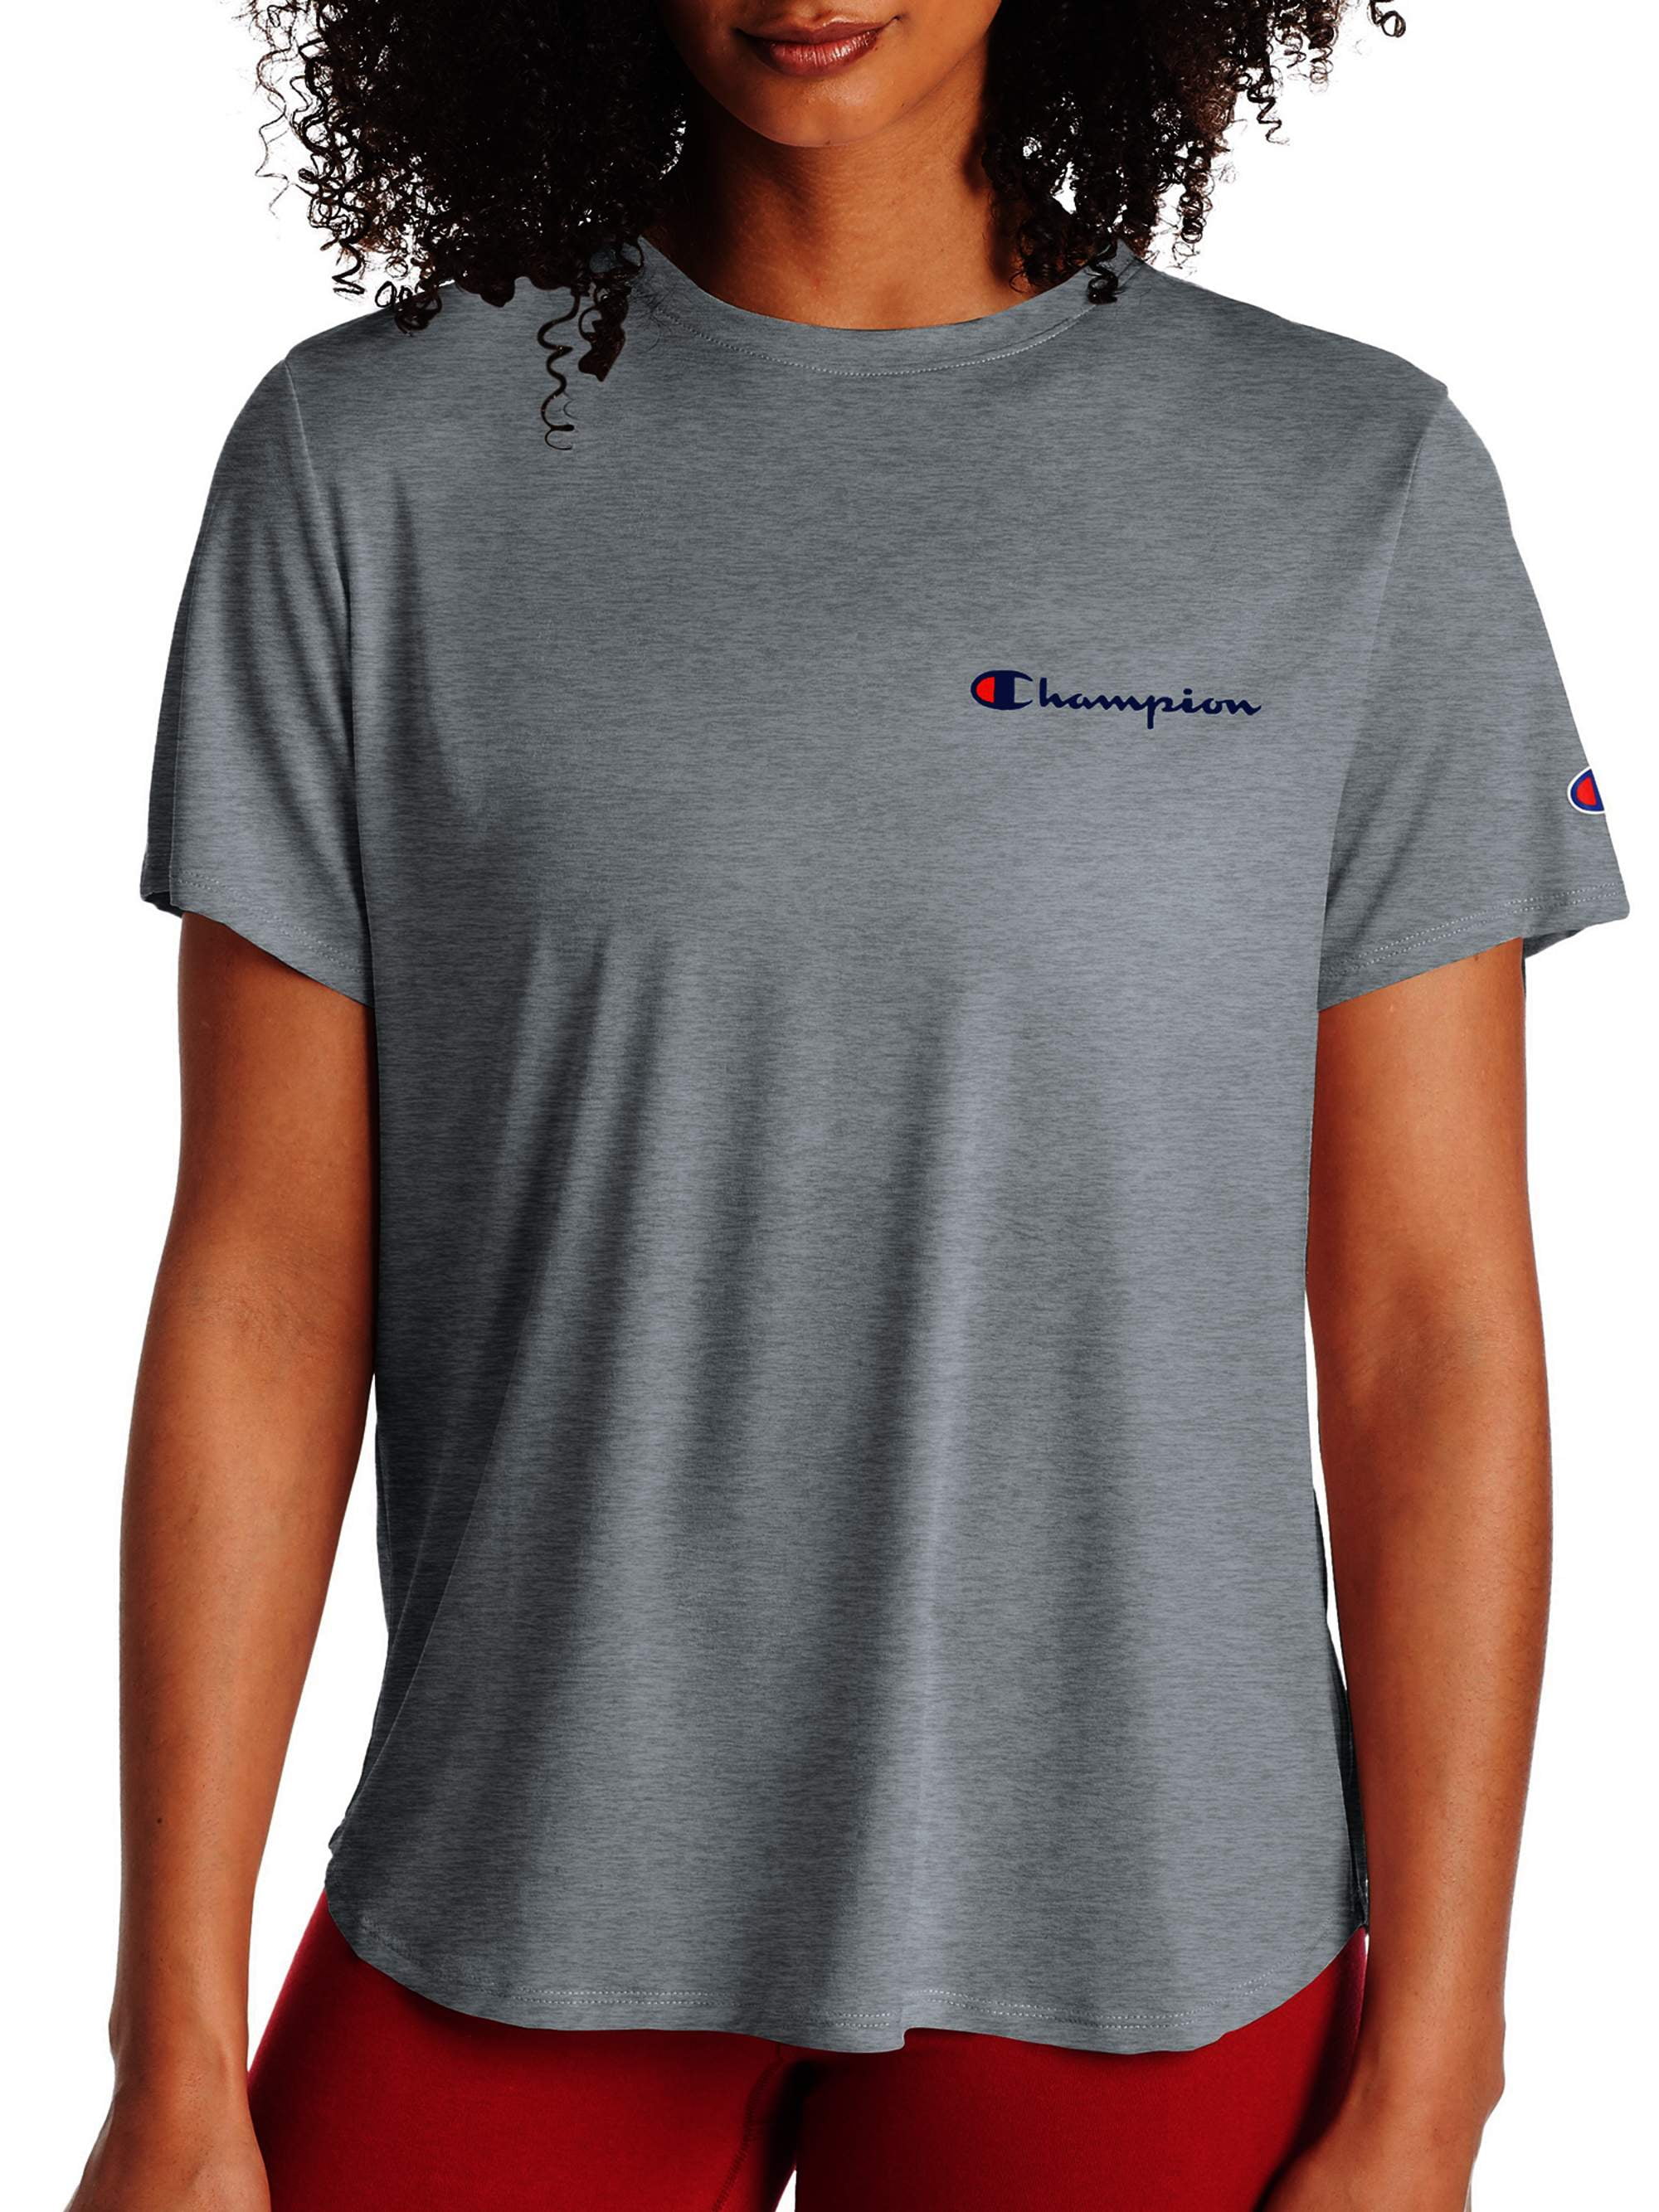 Champion Short Sleeve T-shirt (Women's) - Walmart.com